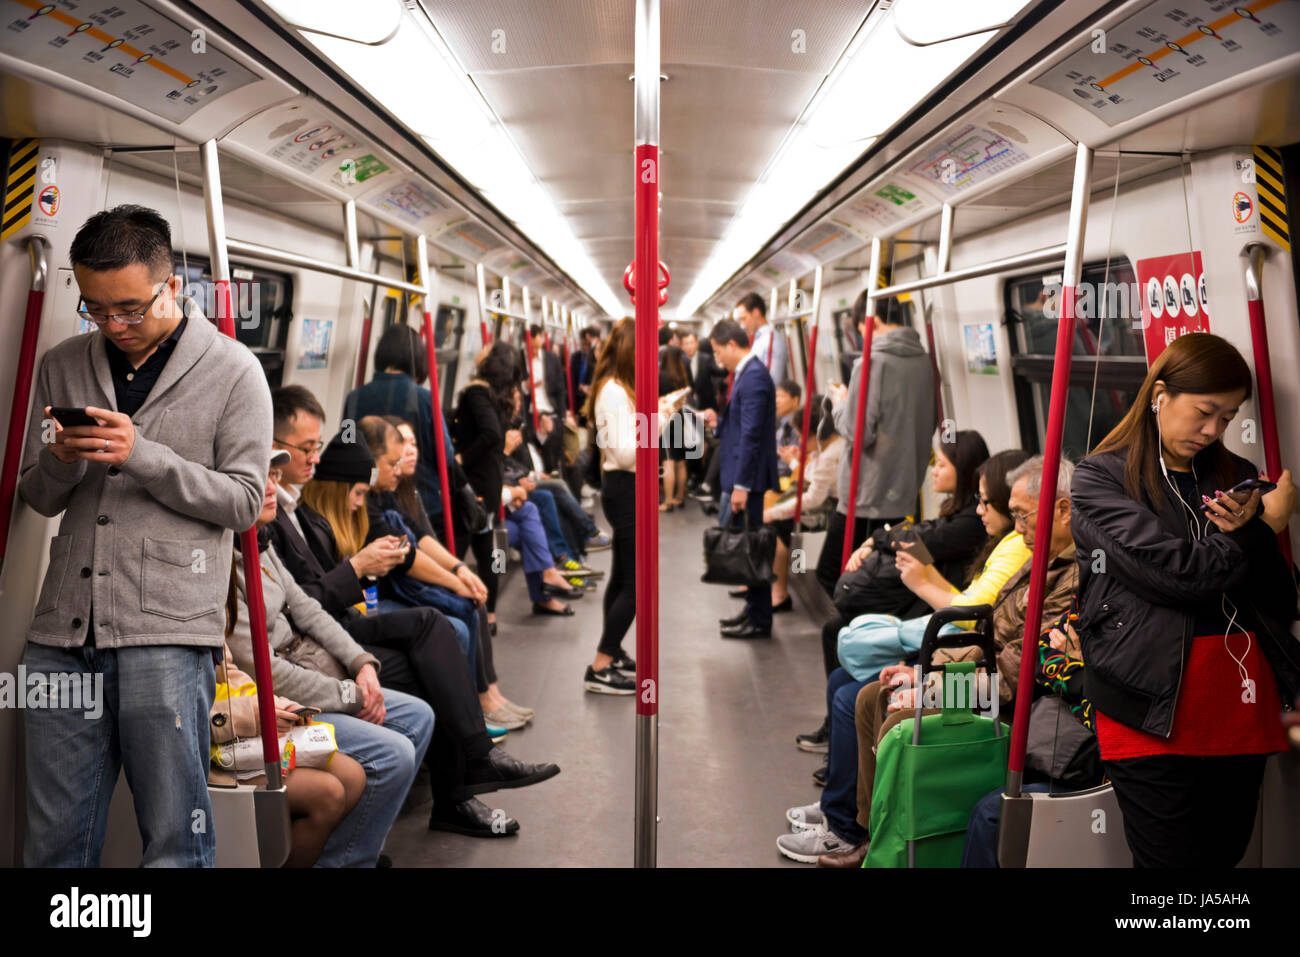 Vue horizontale de passagers à l'intérieur de l'EXAMEN À MI-PARCOURS, Mass Transit Railway, à Hong Kong, Chine. Banque D'Images